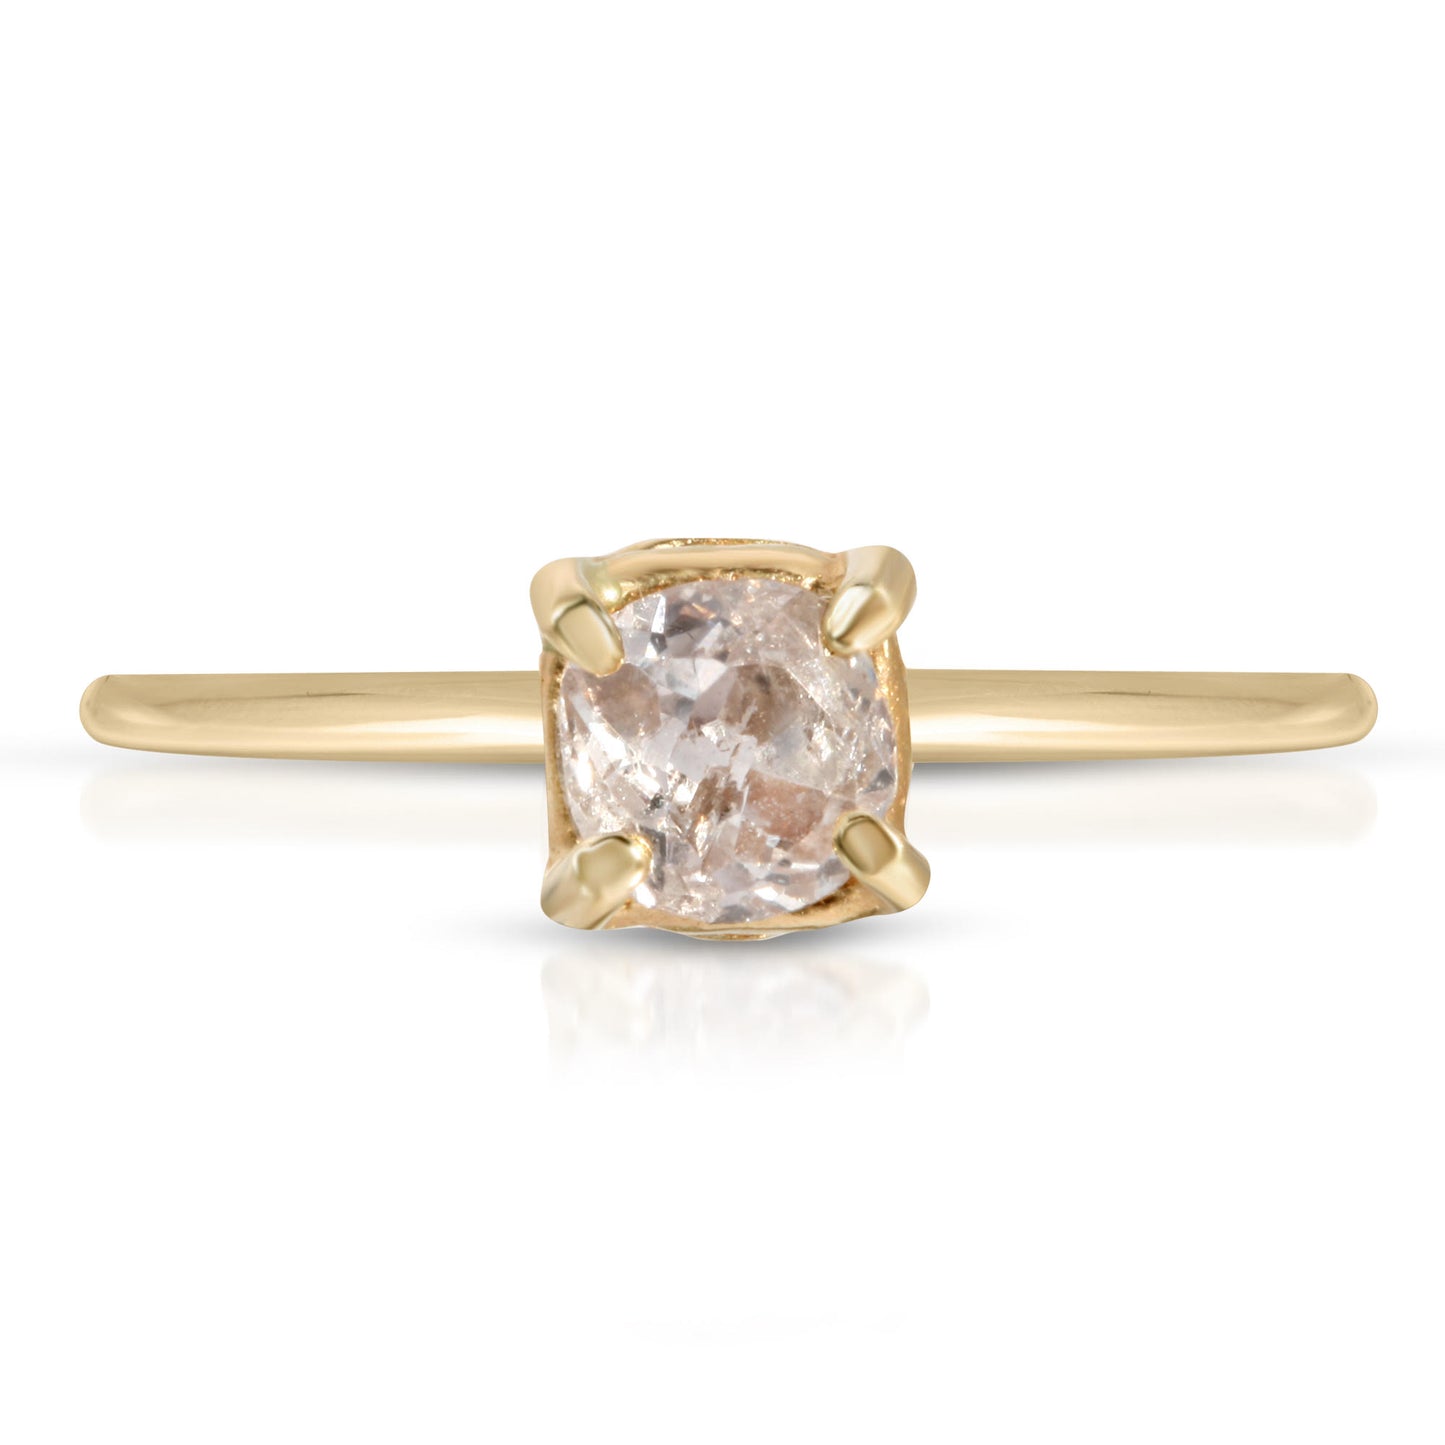 ROSE CUT DIAMOND 14K RING - Danielle Morgan 